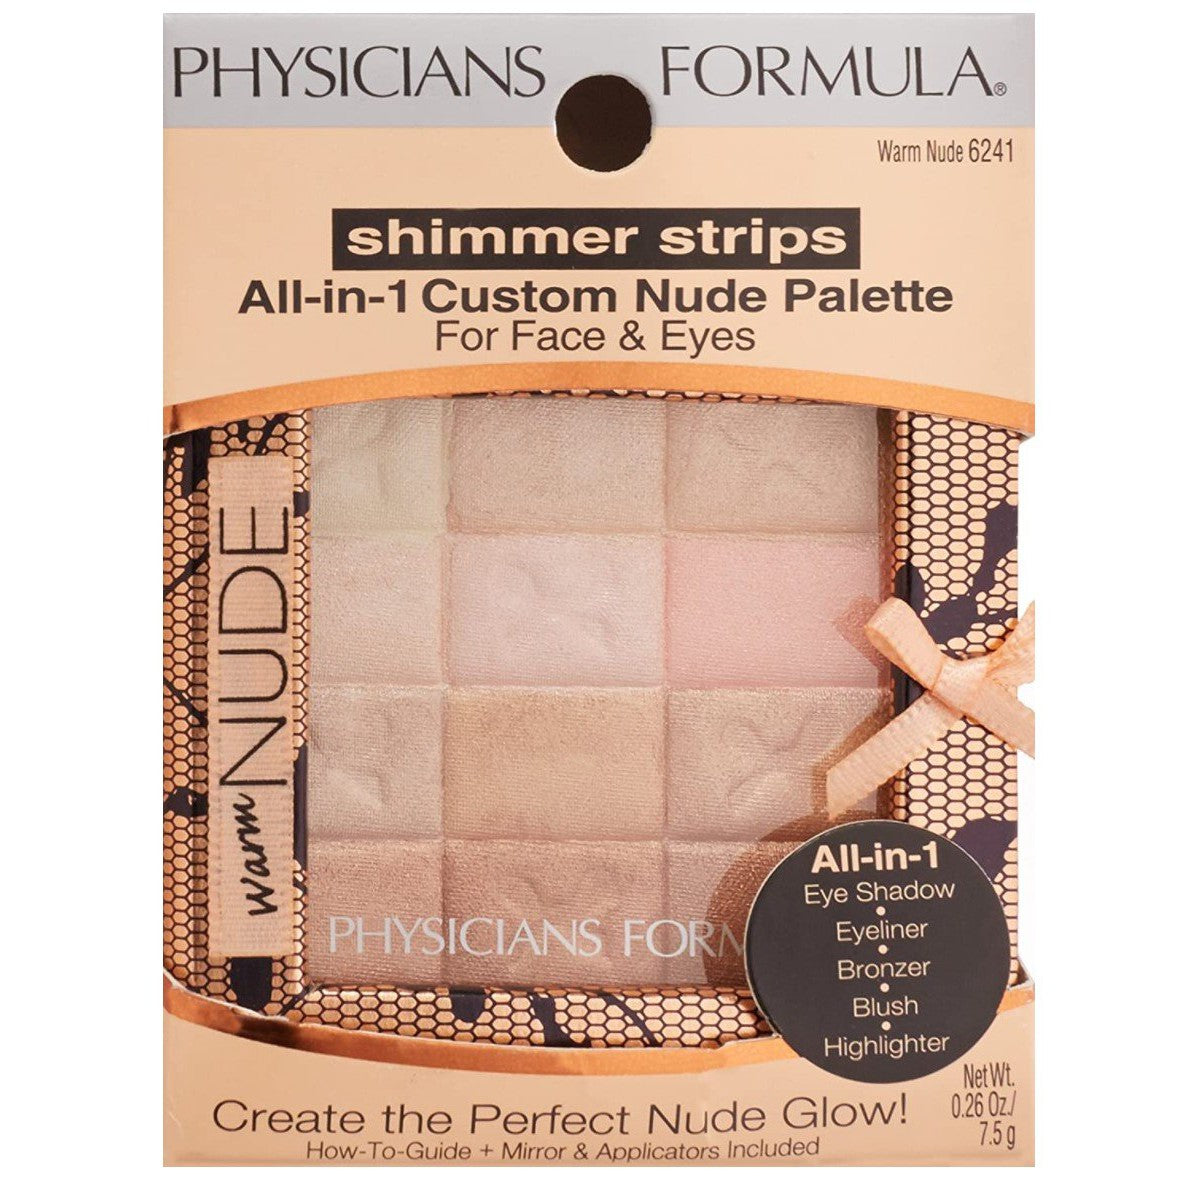 Shimmer Strips - Physicians Formula, todo en 1 para la cara y ojos, Color: 6241 Warm nude.